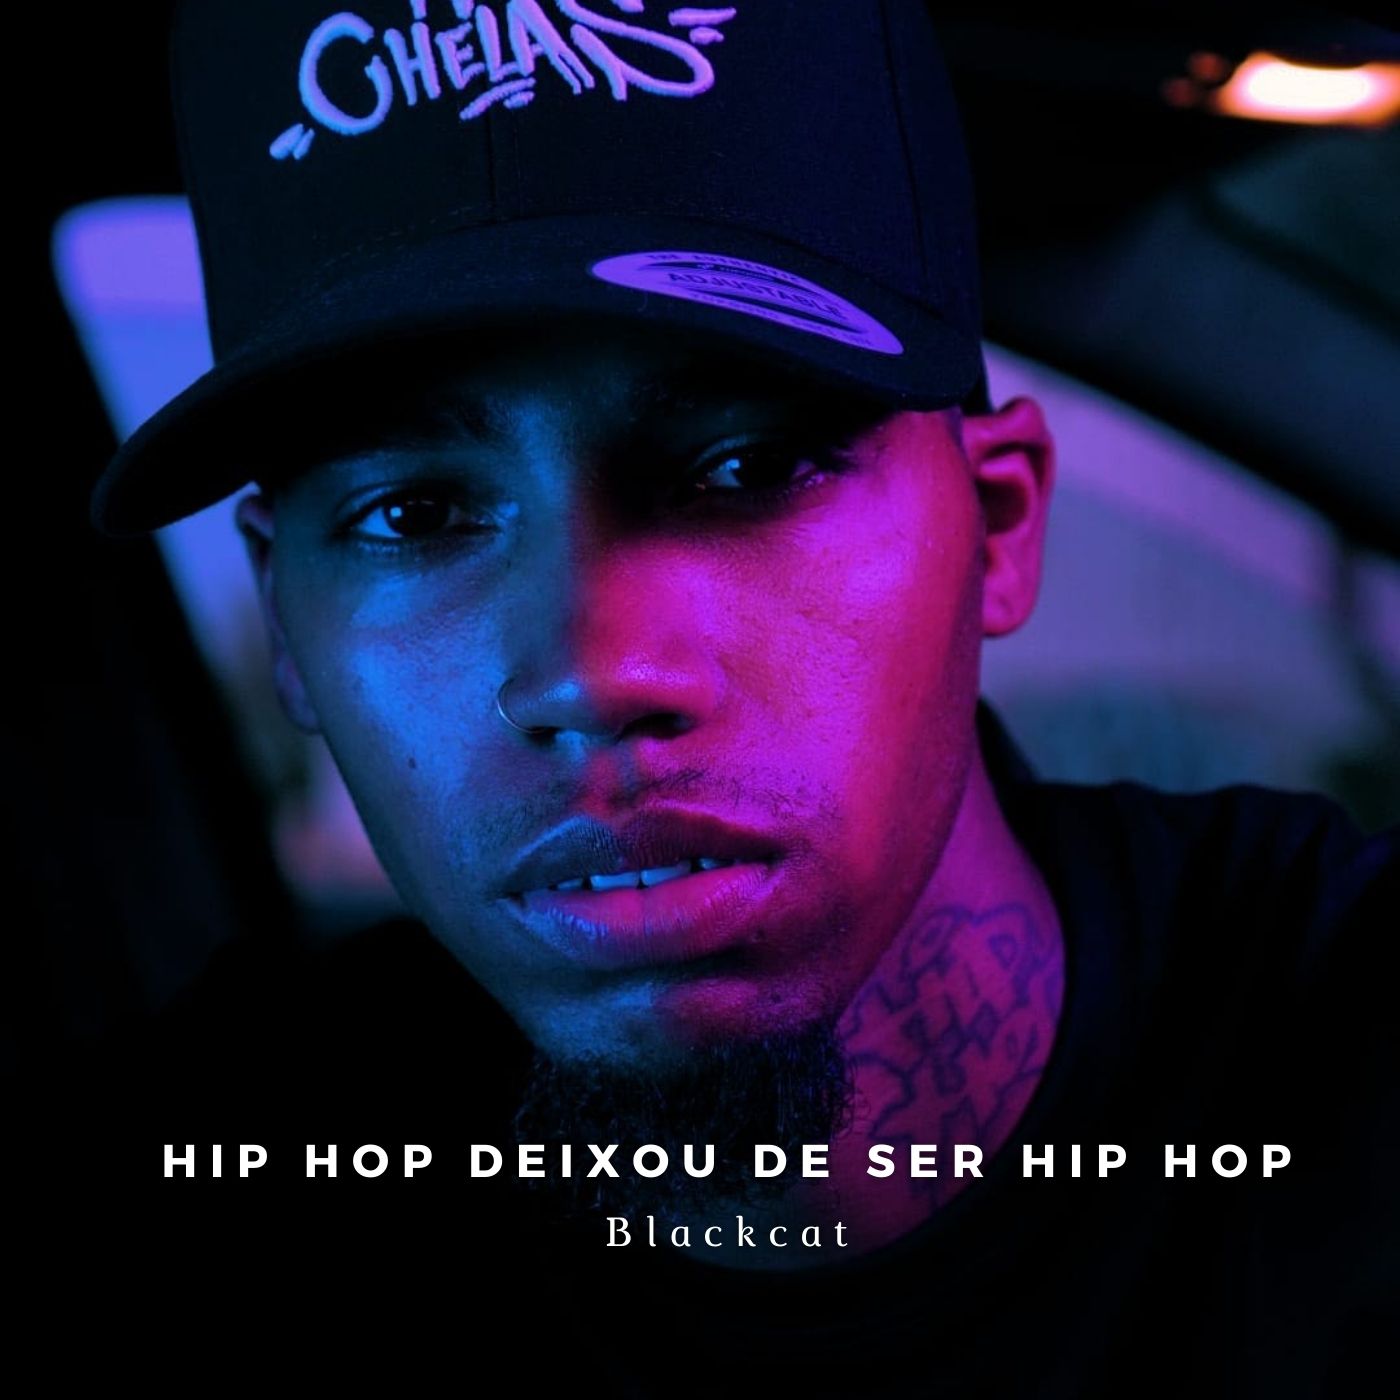 Blackcat - Hip Hop deixou de ser Hip Hop